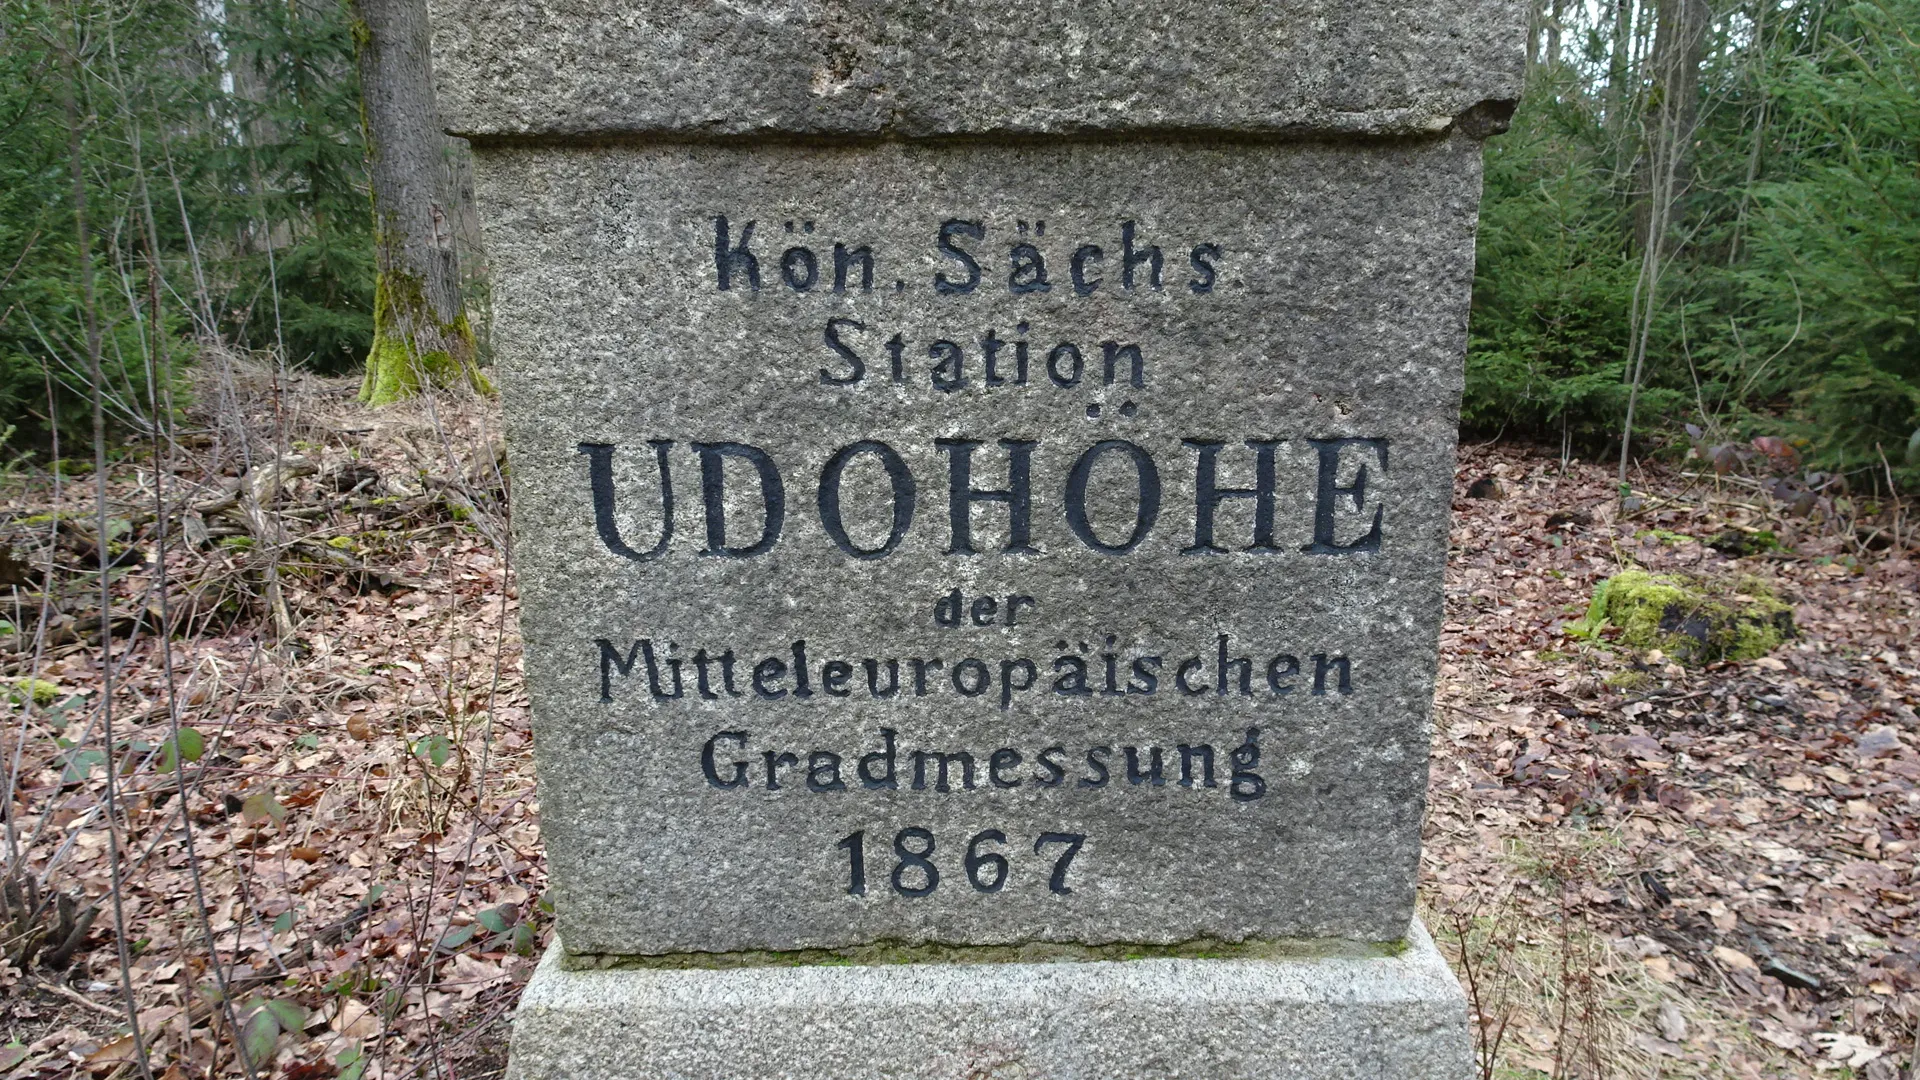 Photo showing: Triangulationssäule 1. Ordnung auf der Udohöhe